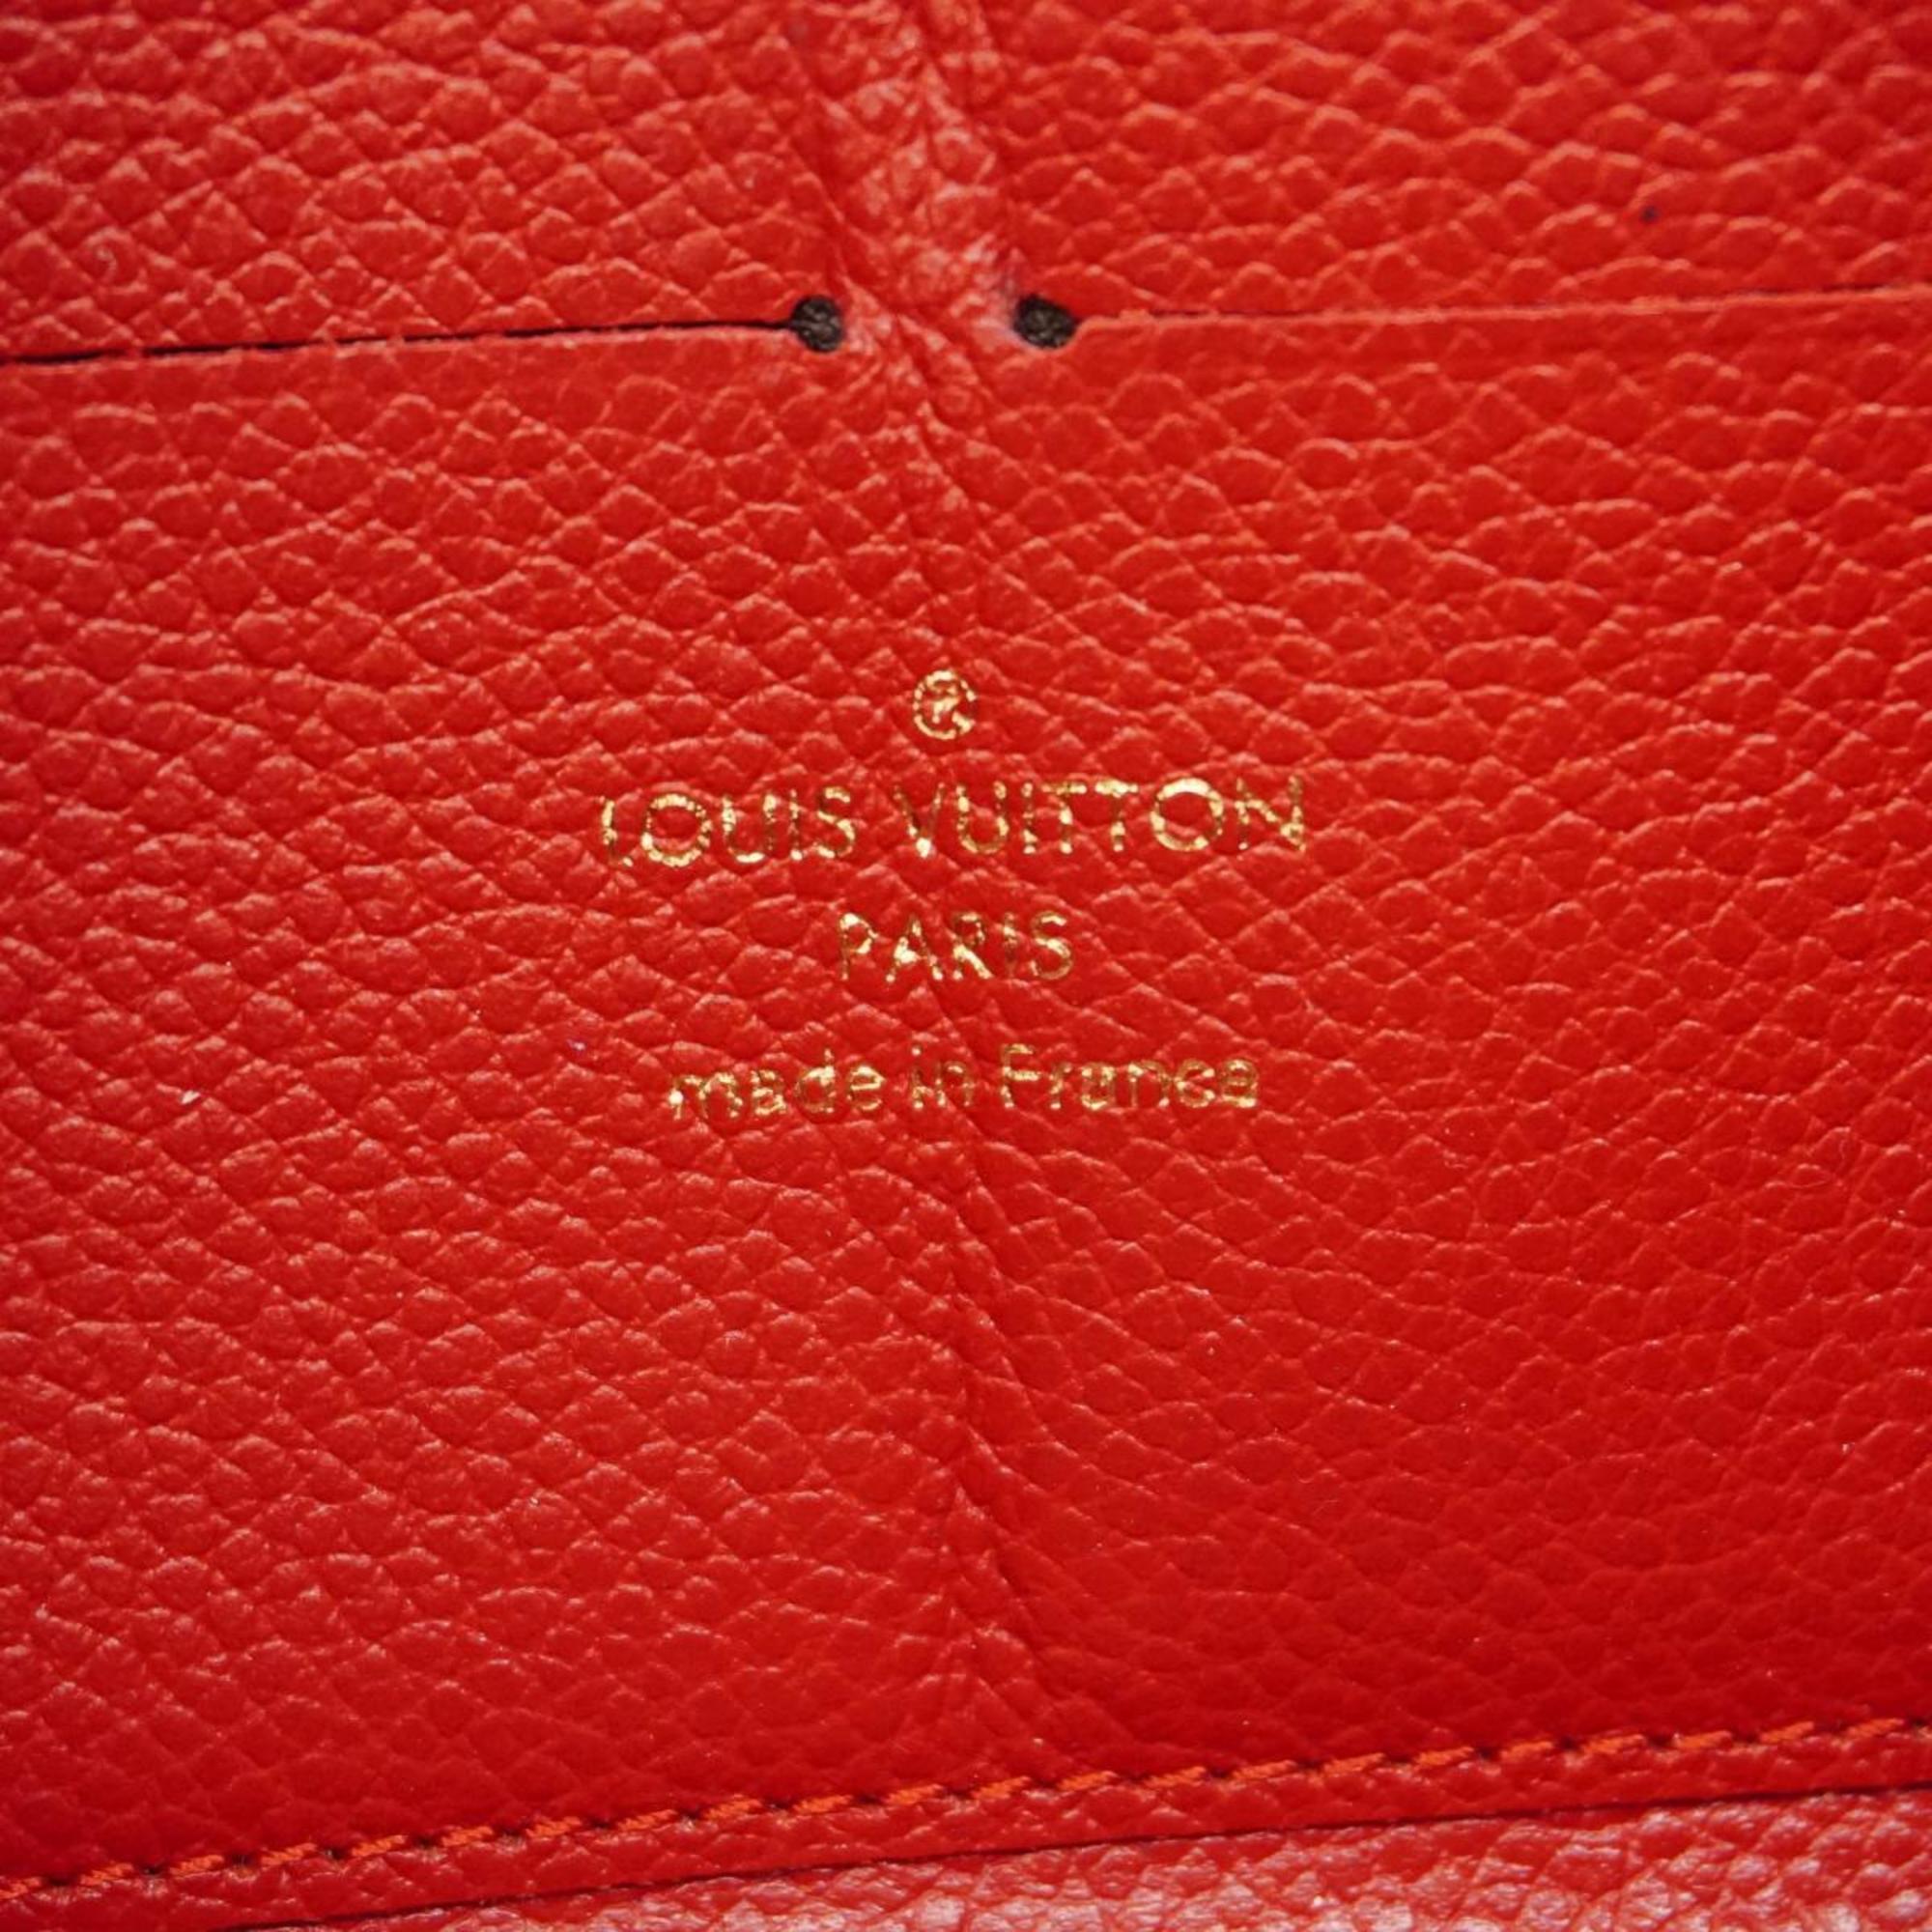 Louis Vuitton Long Wallet Monogram Empreinte Zippy M60737 Cerise Ladies